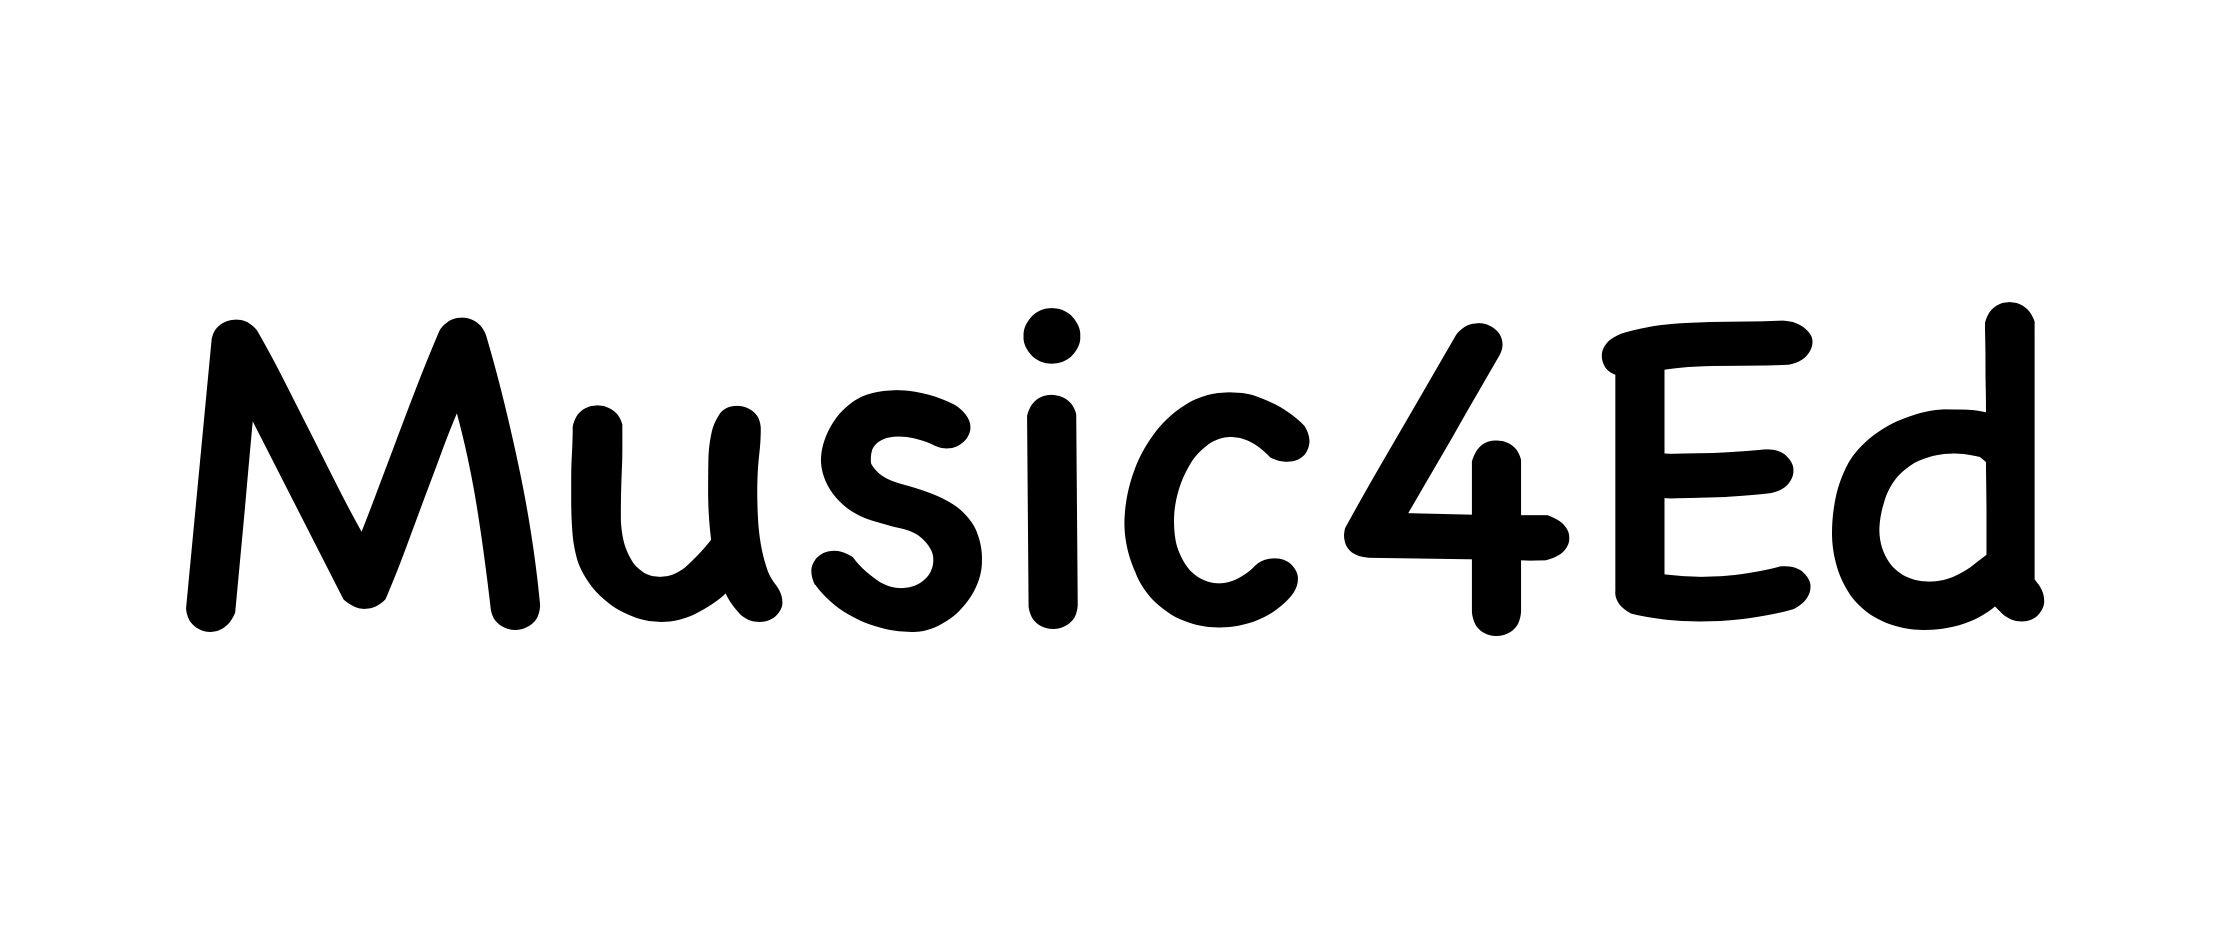 Music4Ed, short for music for education